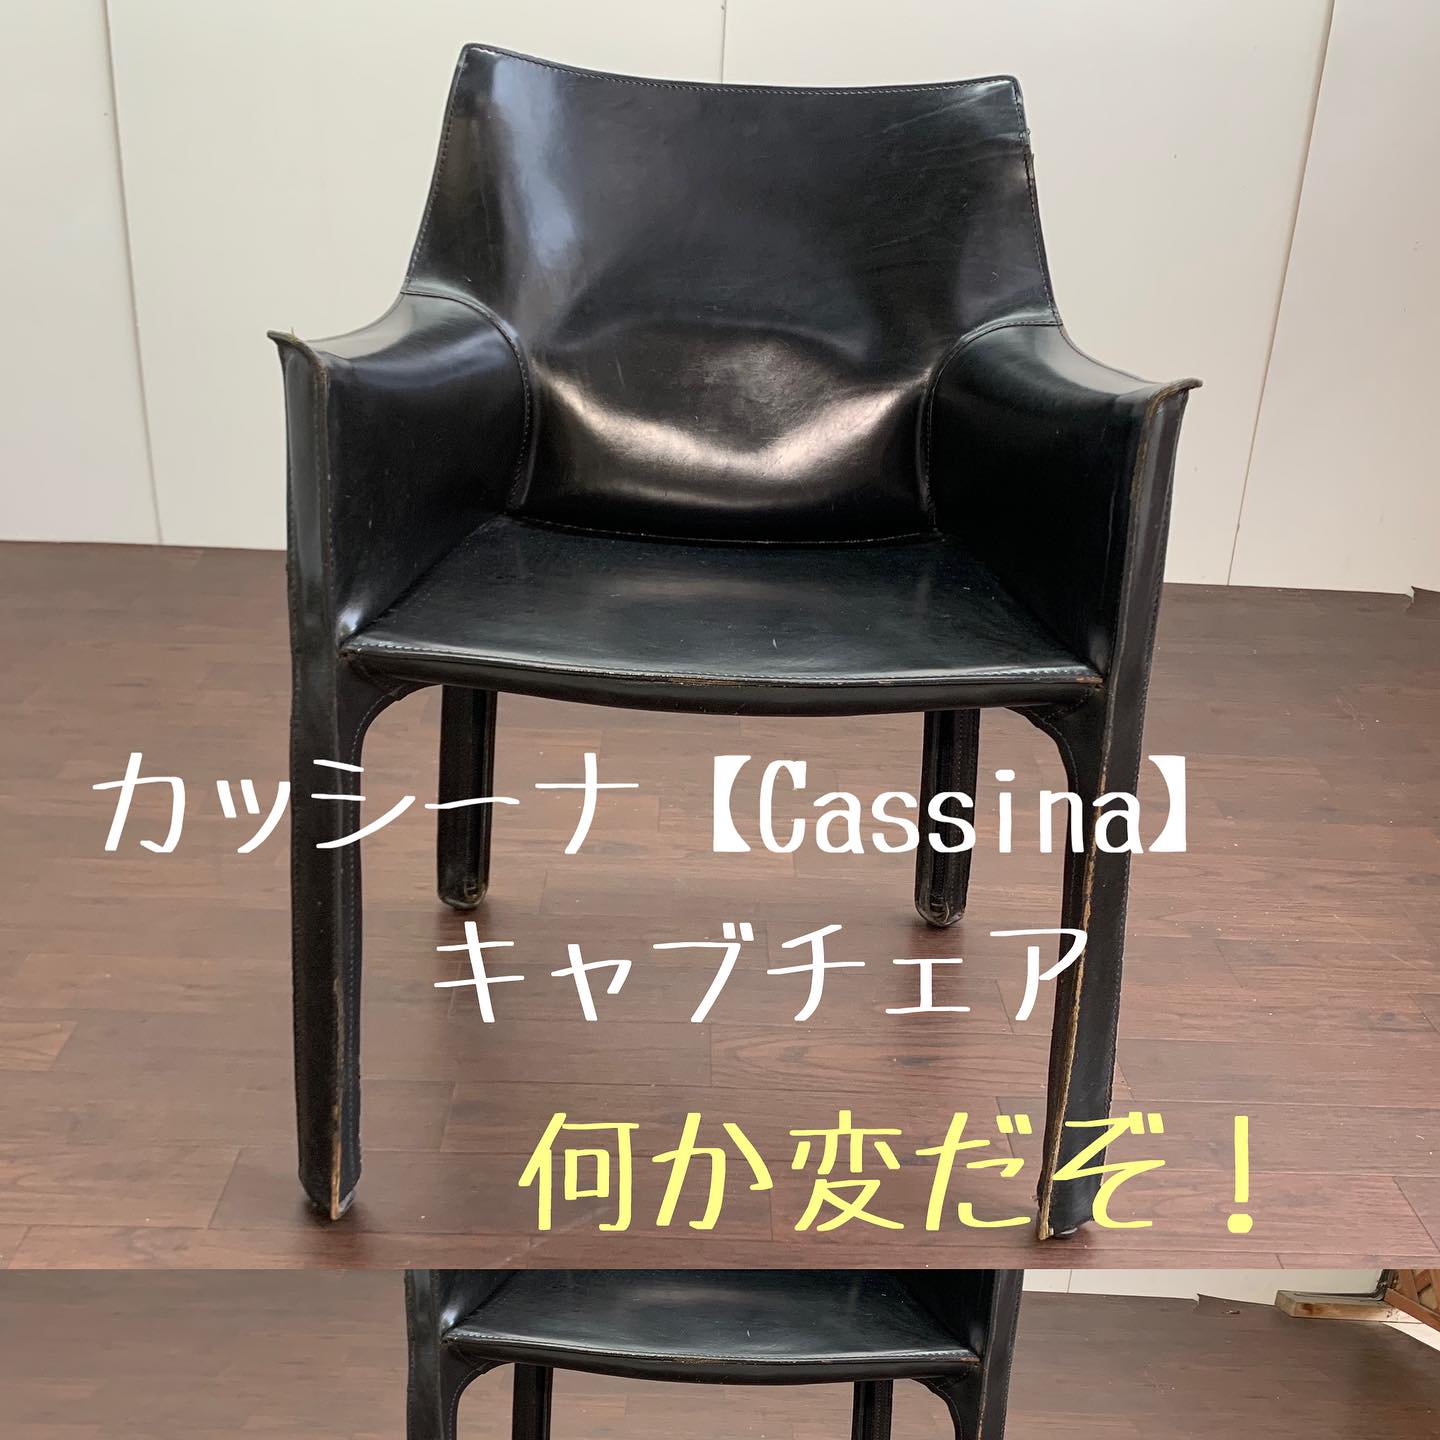 人気高級家具 カッシーナ【Cassina】の名作品椅子 | ブログ | 名古屋